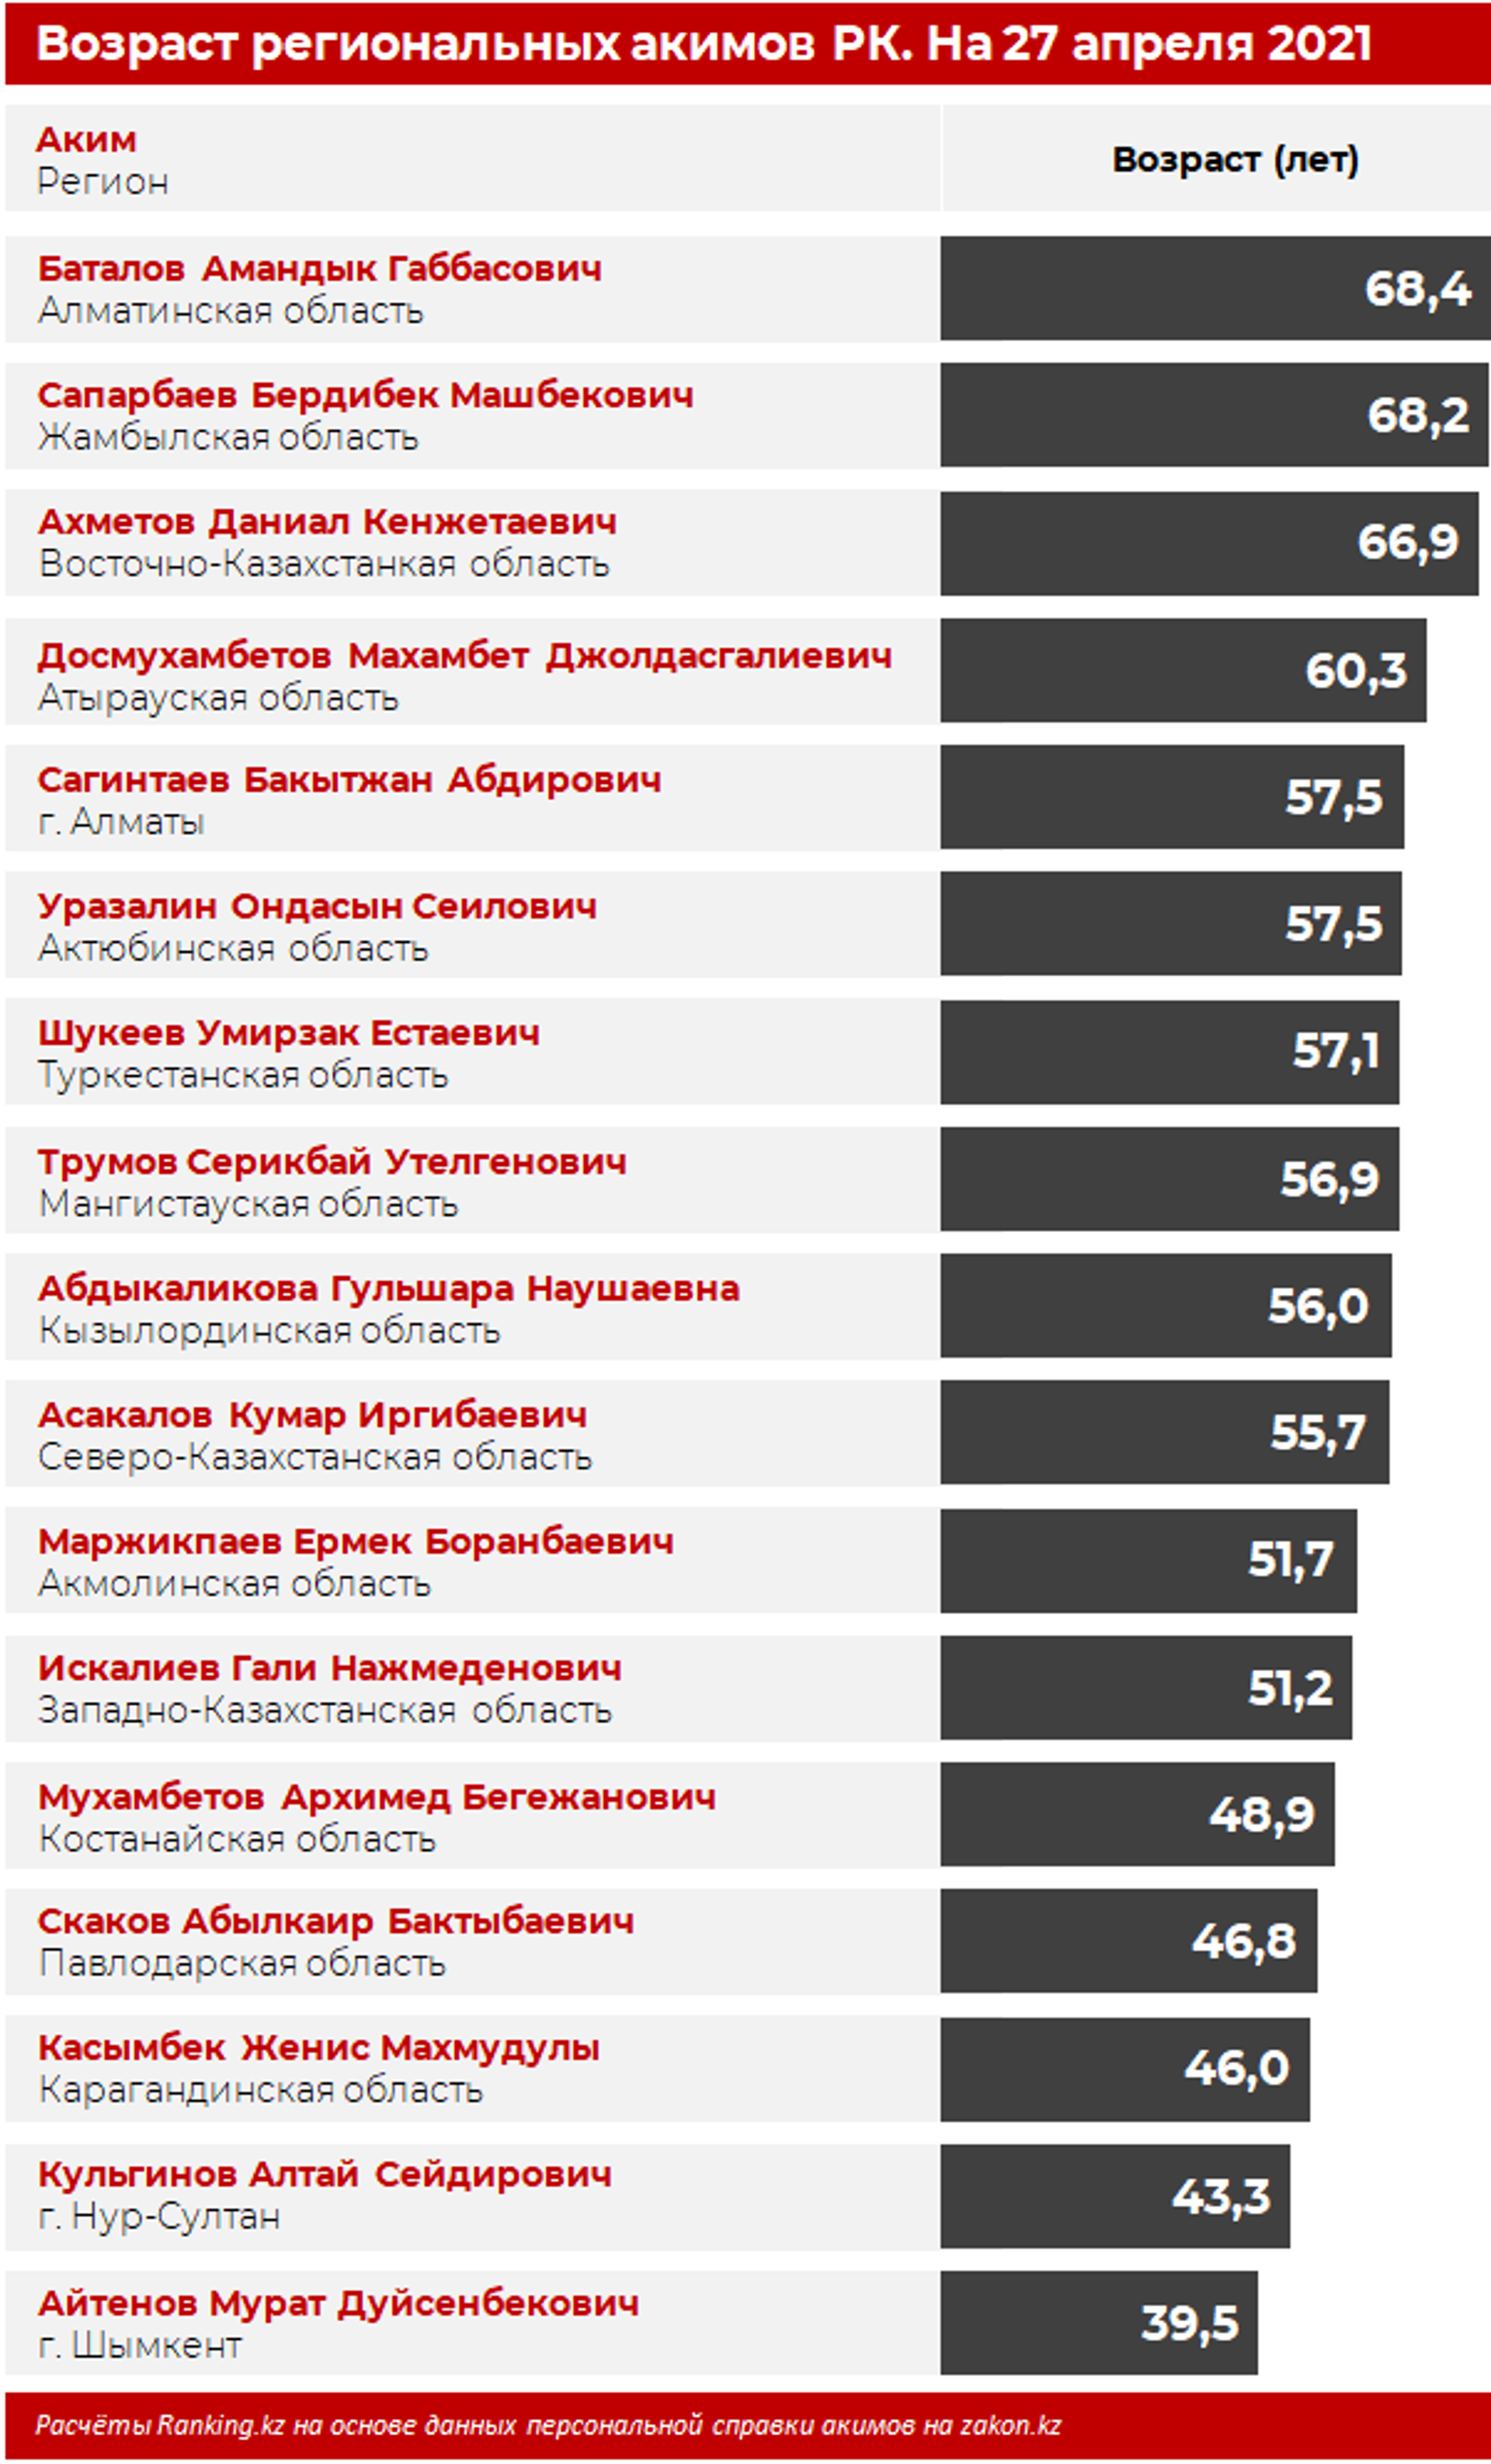 Средний возраст акимов регионов в Казахстане - 55 лет - Sputnik Казахстан, 1920, 04.05.2021